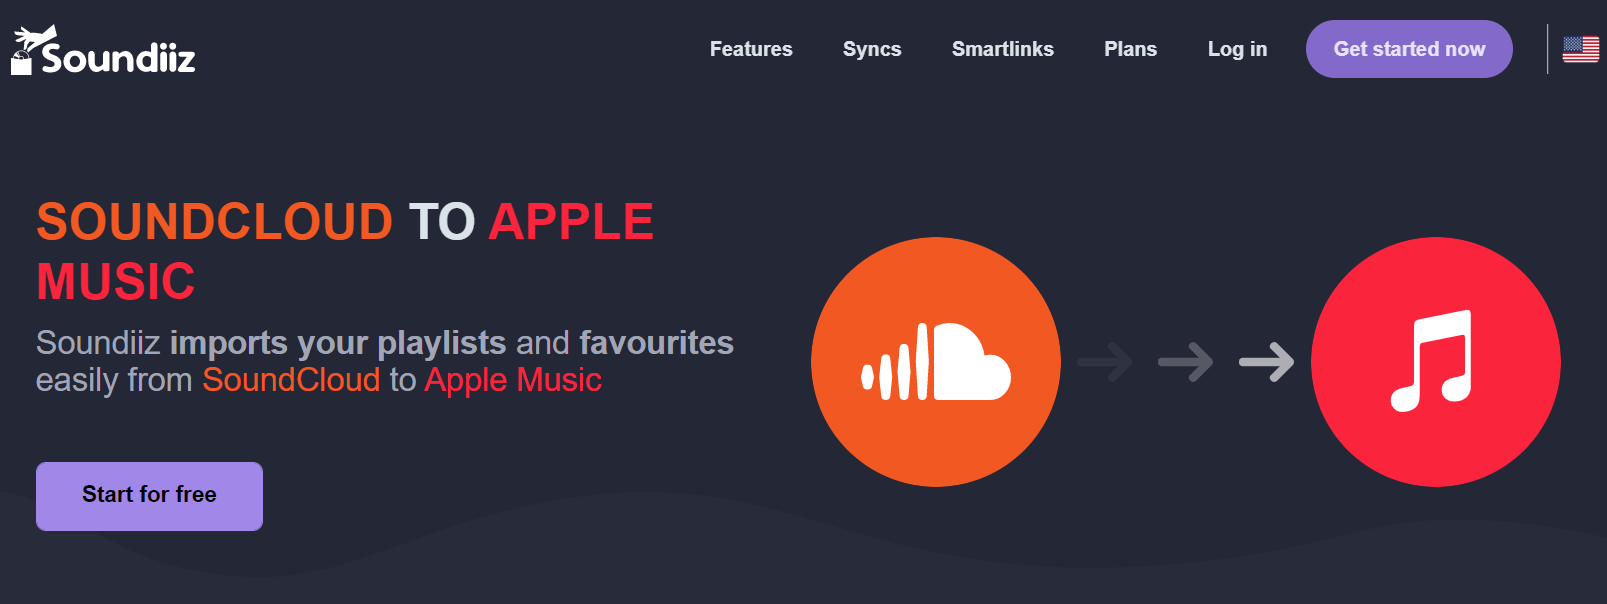 Soundiiz Soundcloud do Apple Music